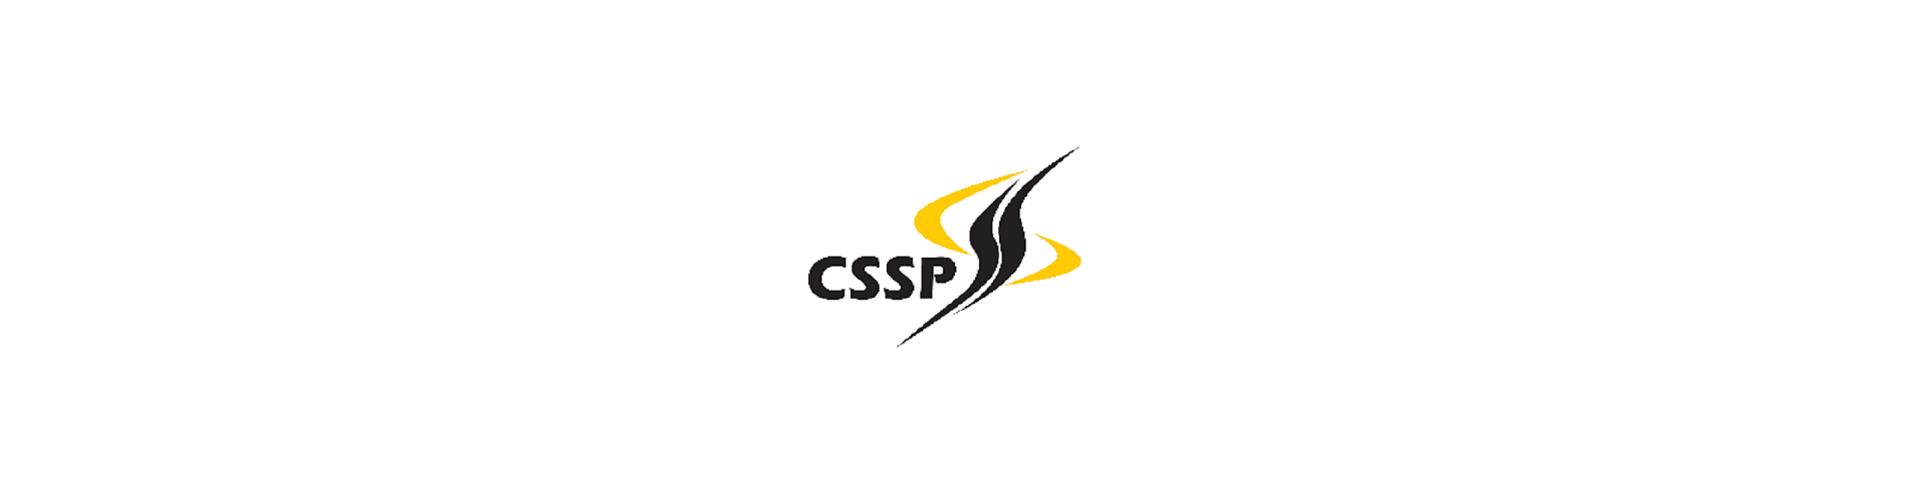 CSSP